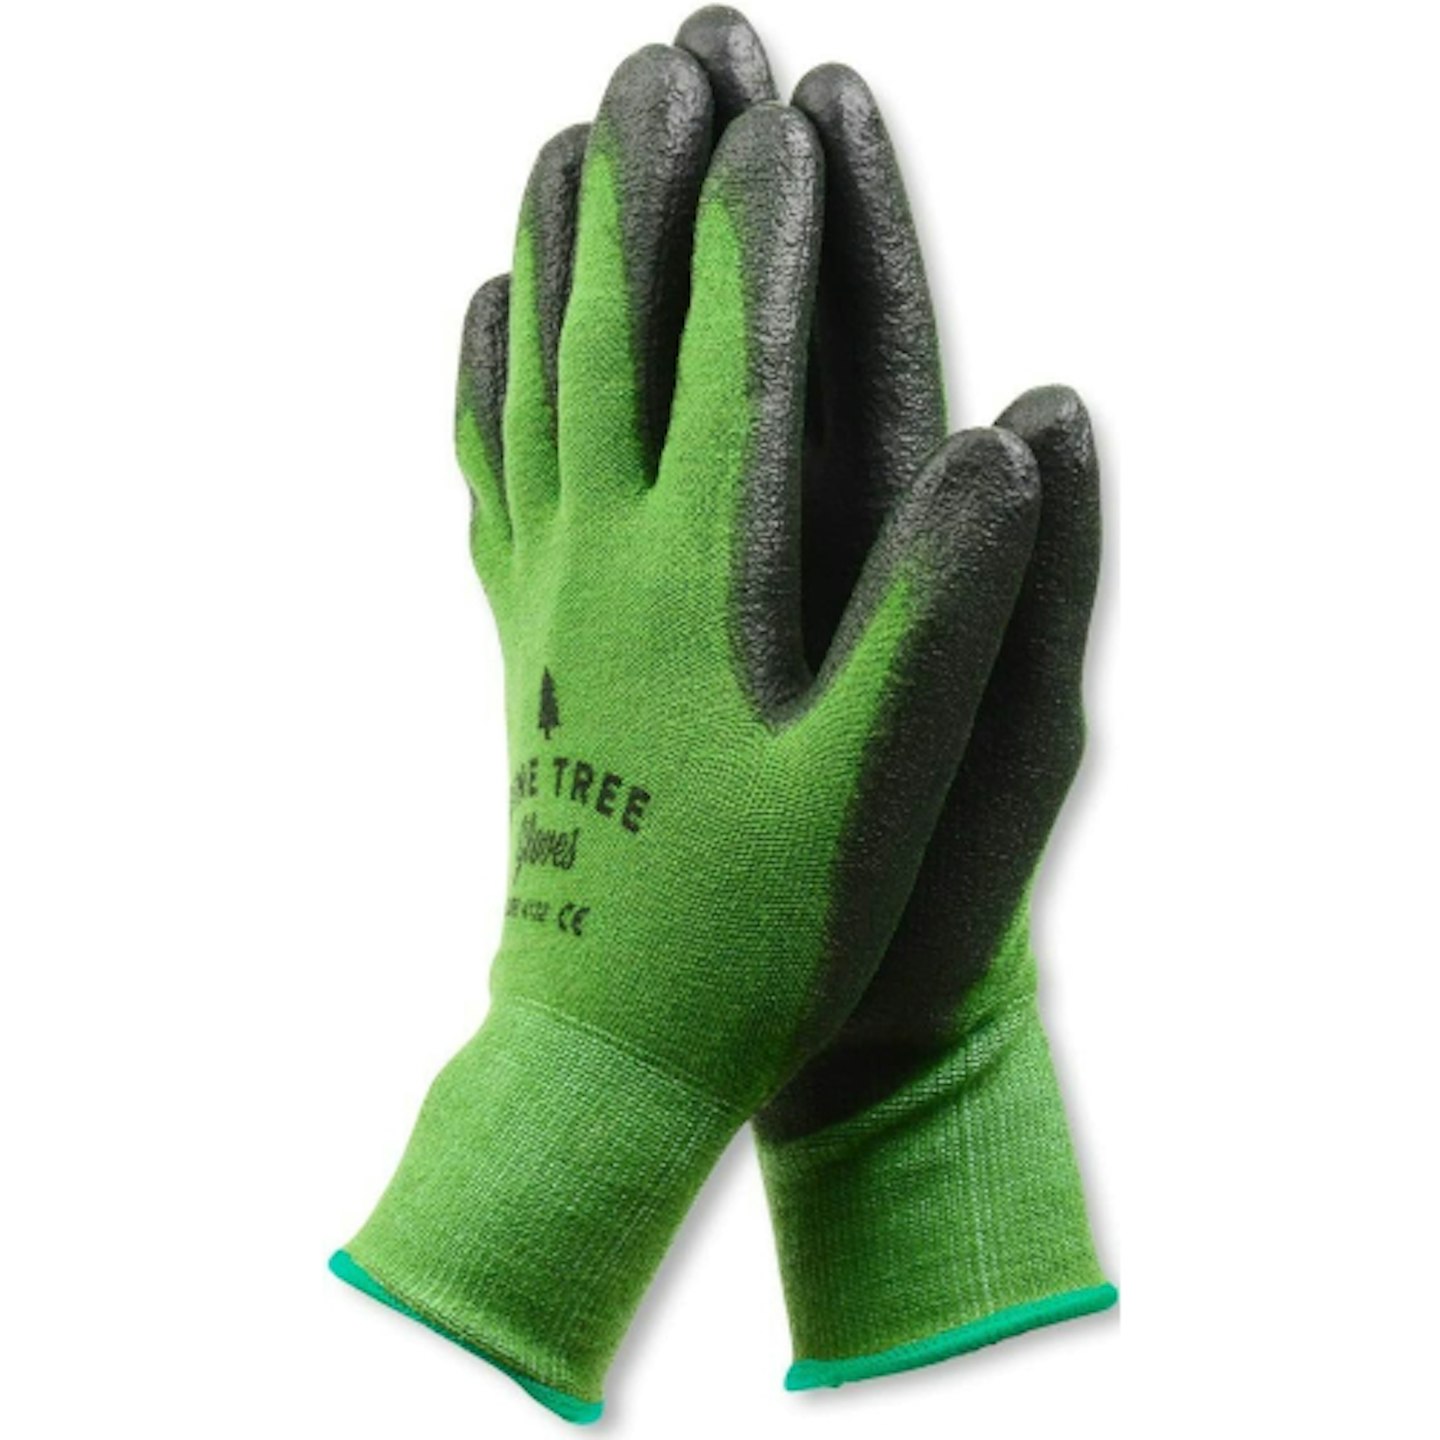 Pine Tree Tools gloves